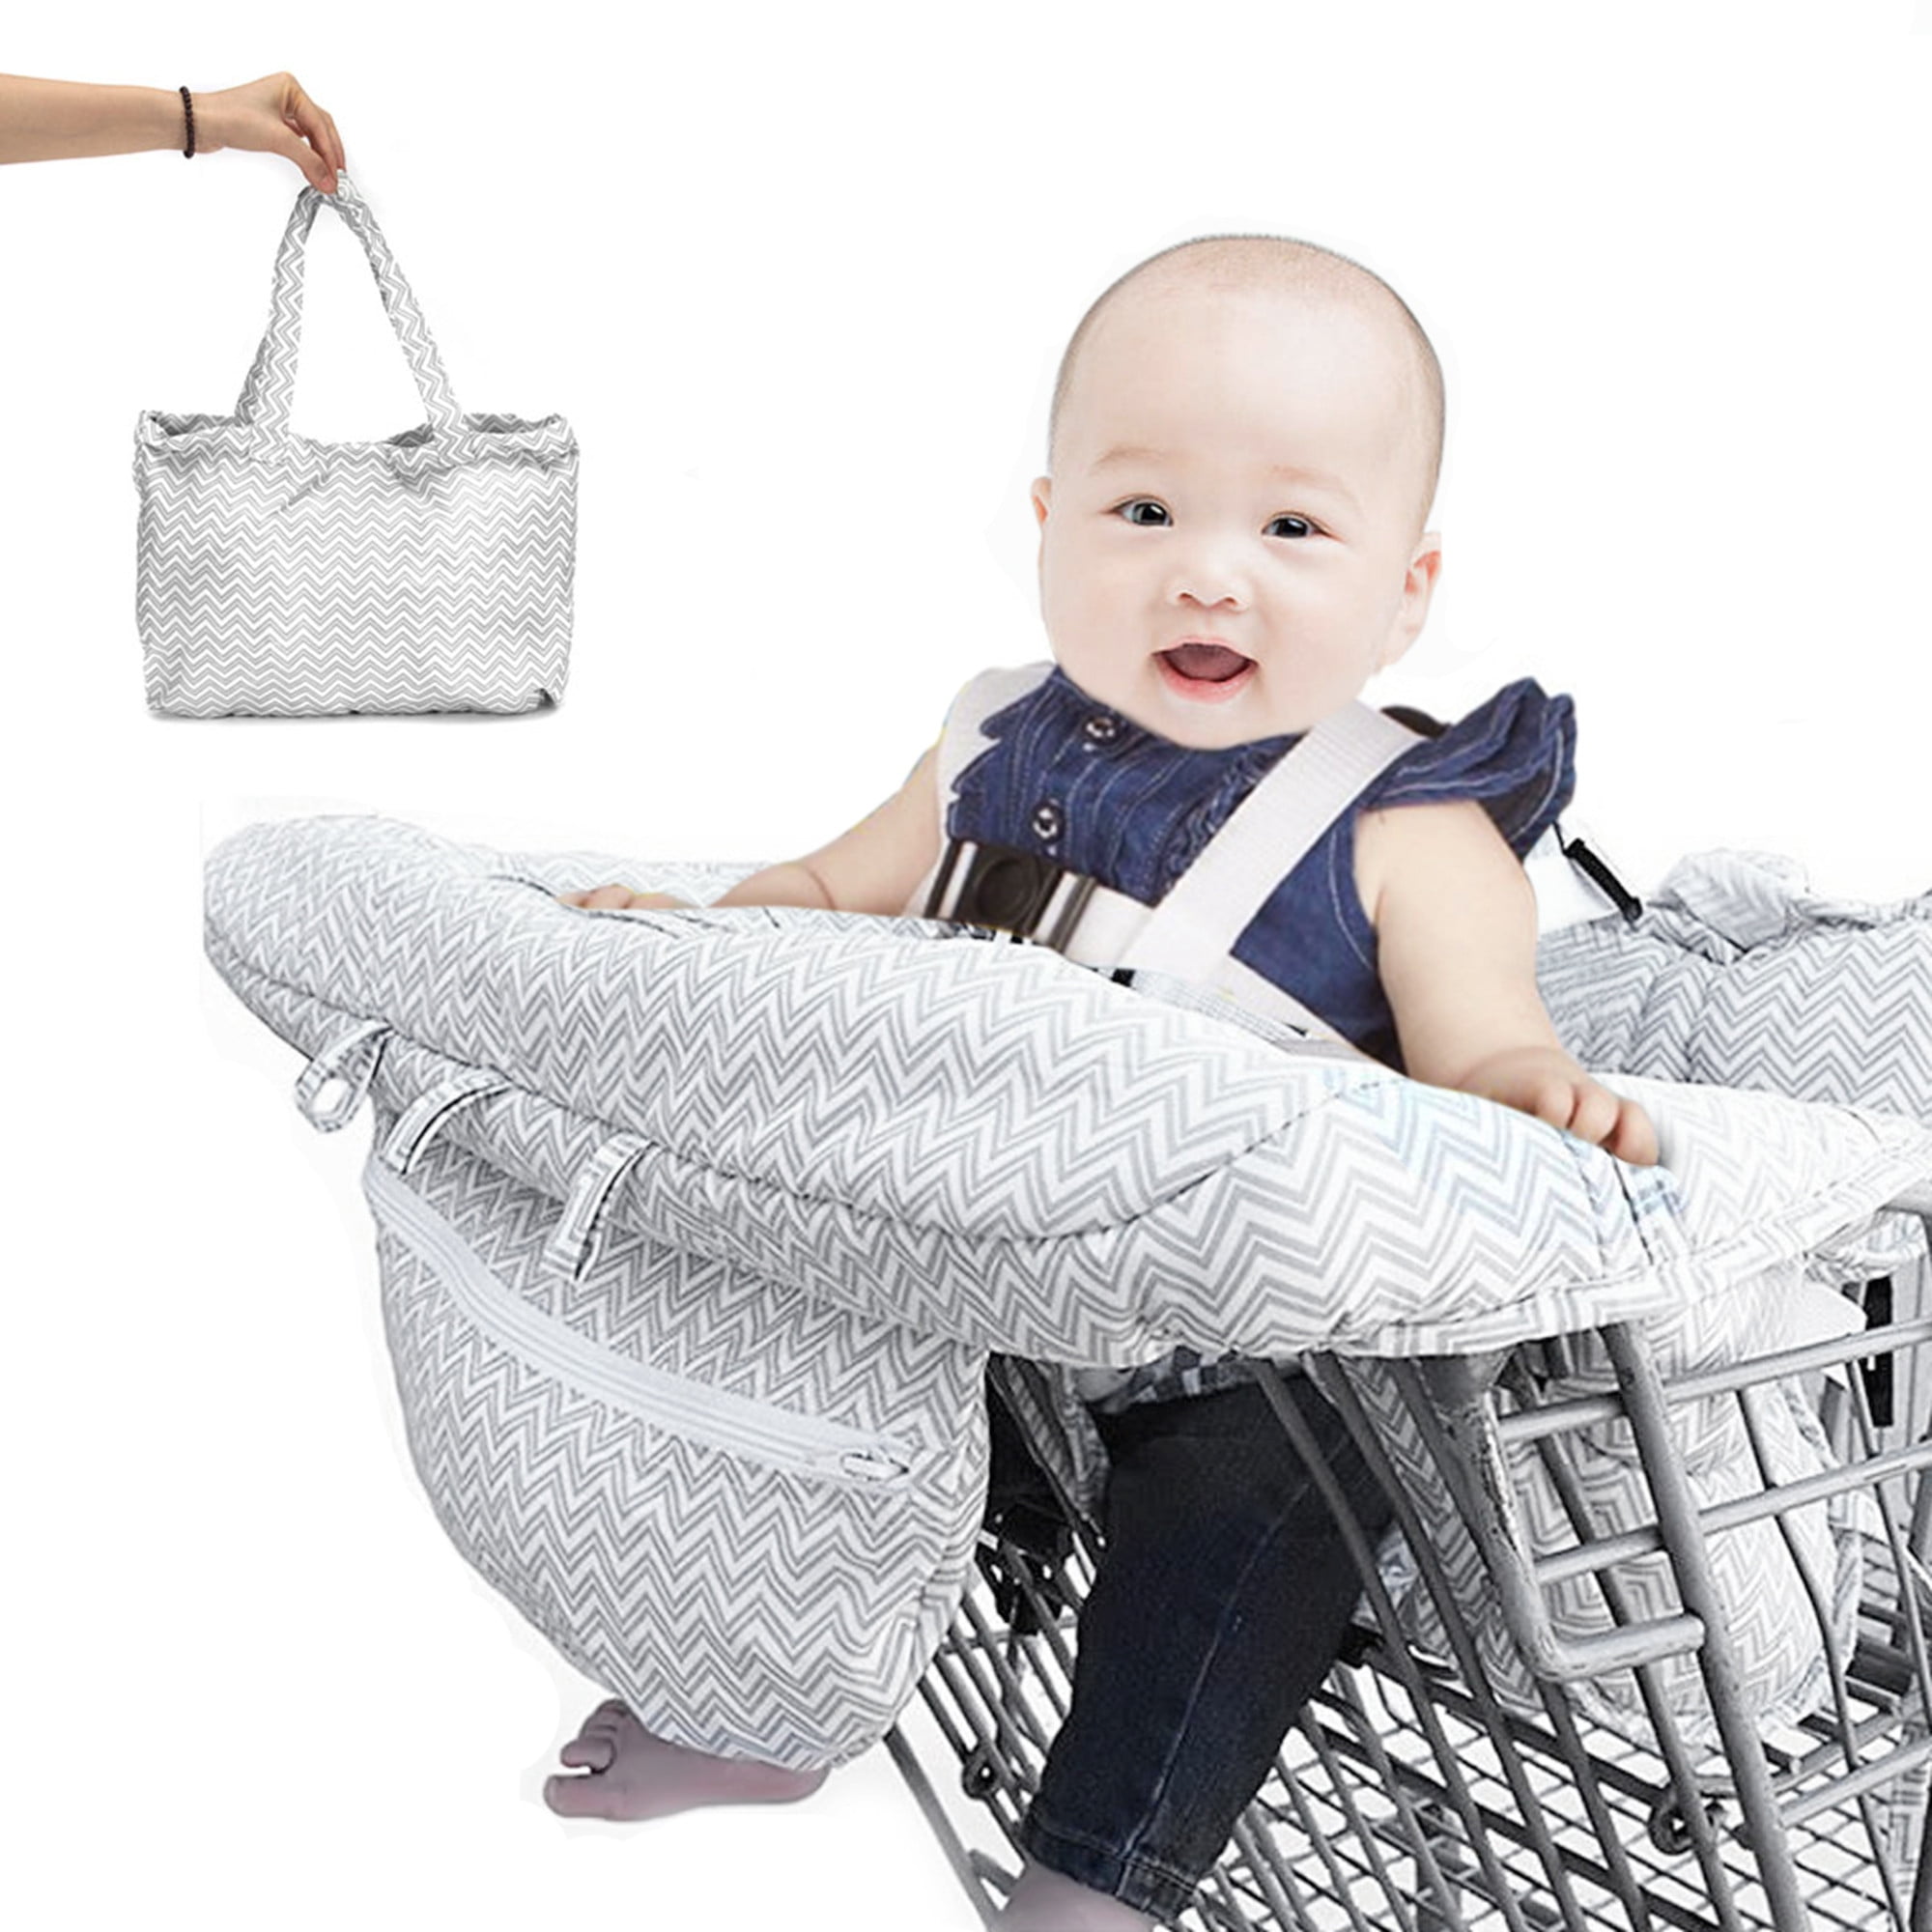 baby shop trolley